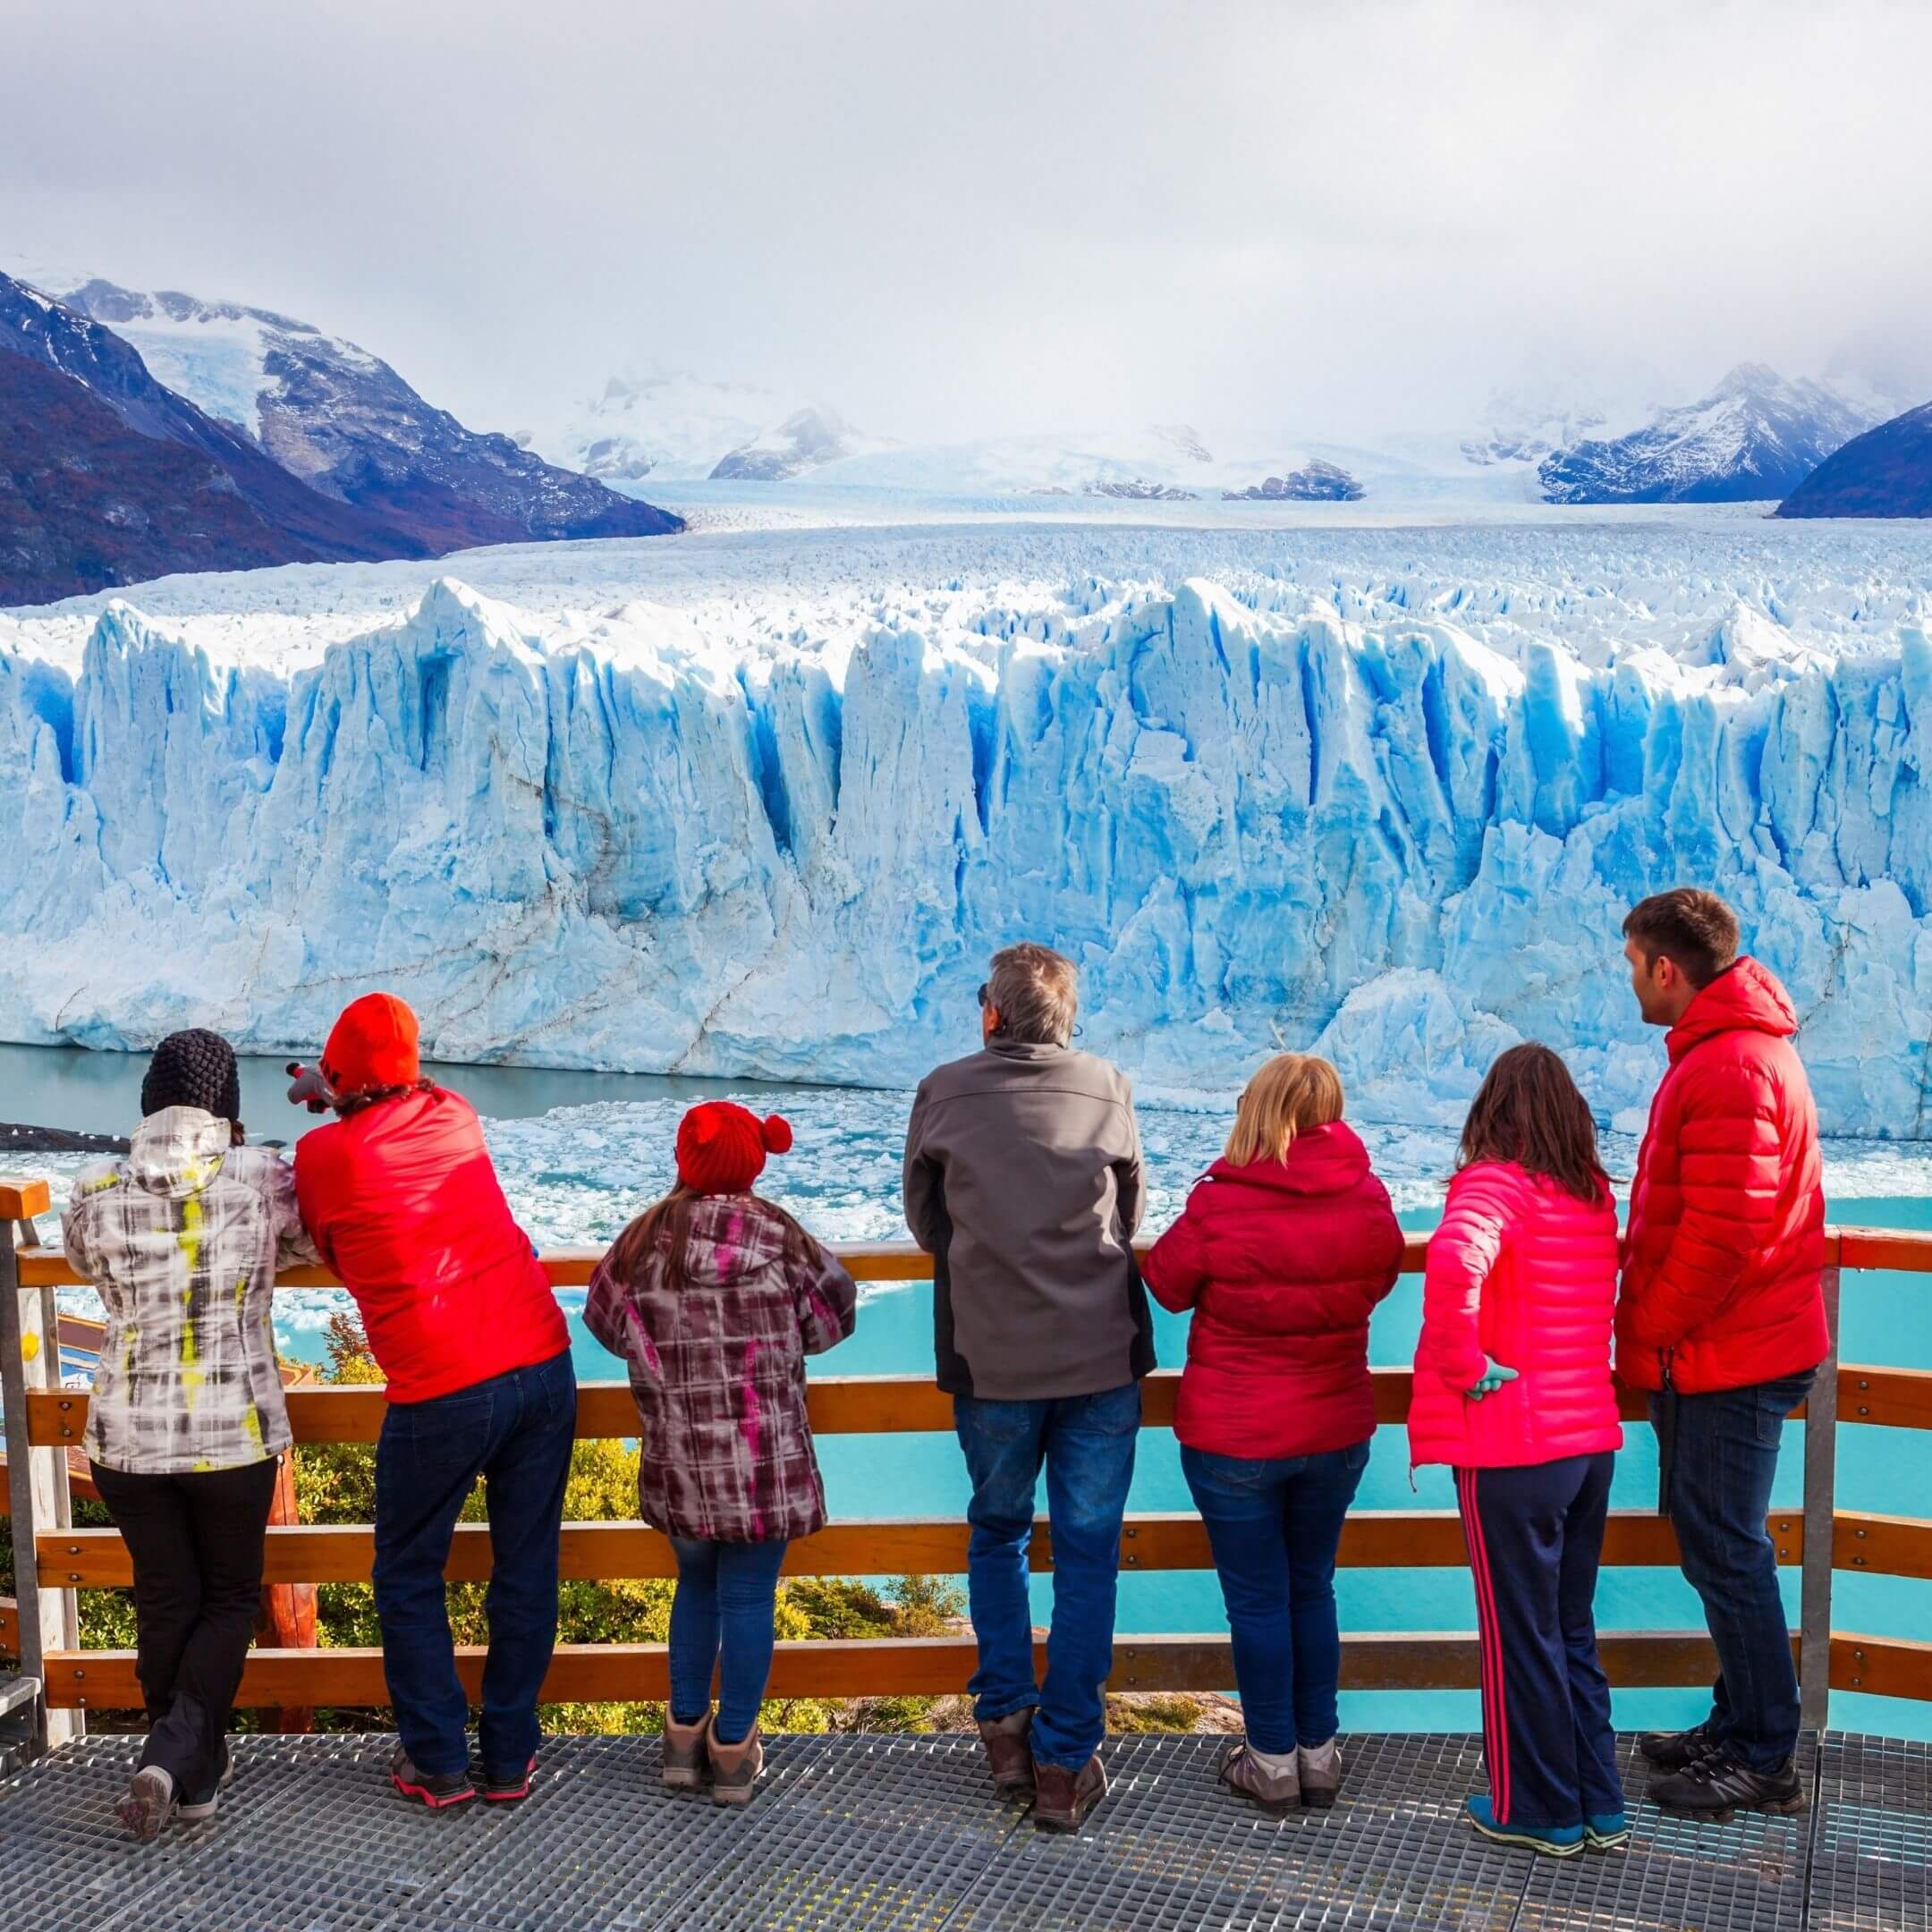 El Calafate - Argentina: O que fazer na cidade das geleiras - Viagens e  Caminhos